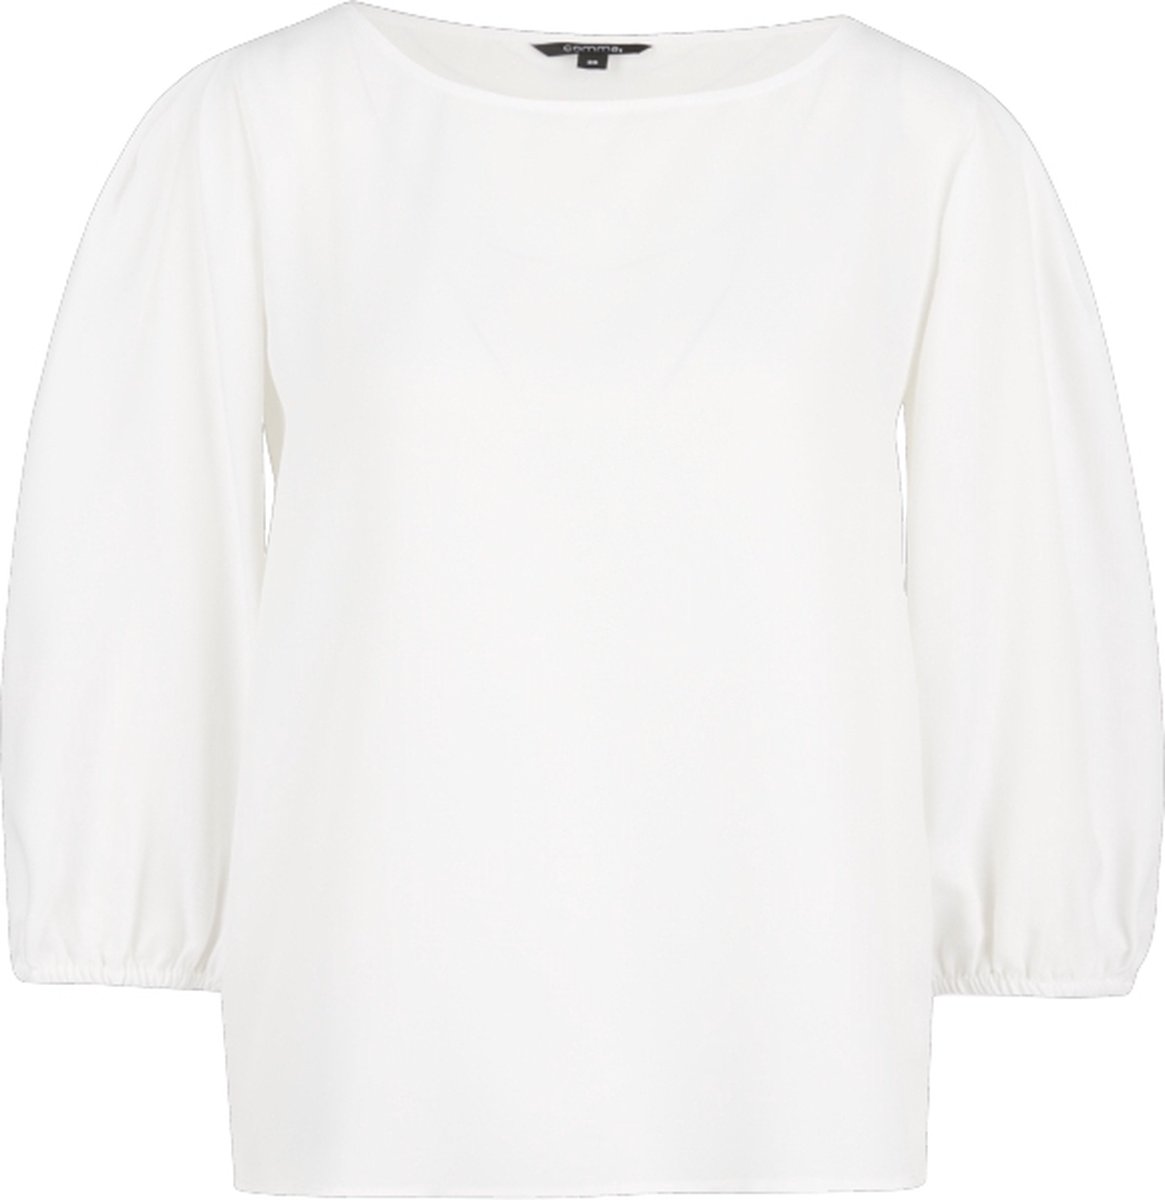 Witte blouse met driekwart mouw - Comma - Maat 32